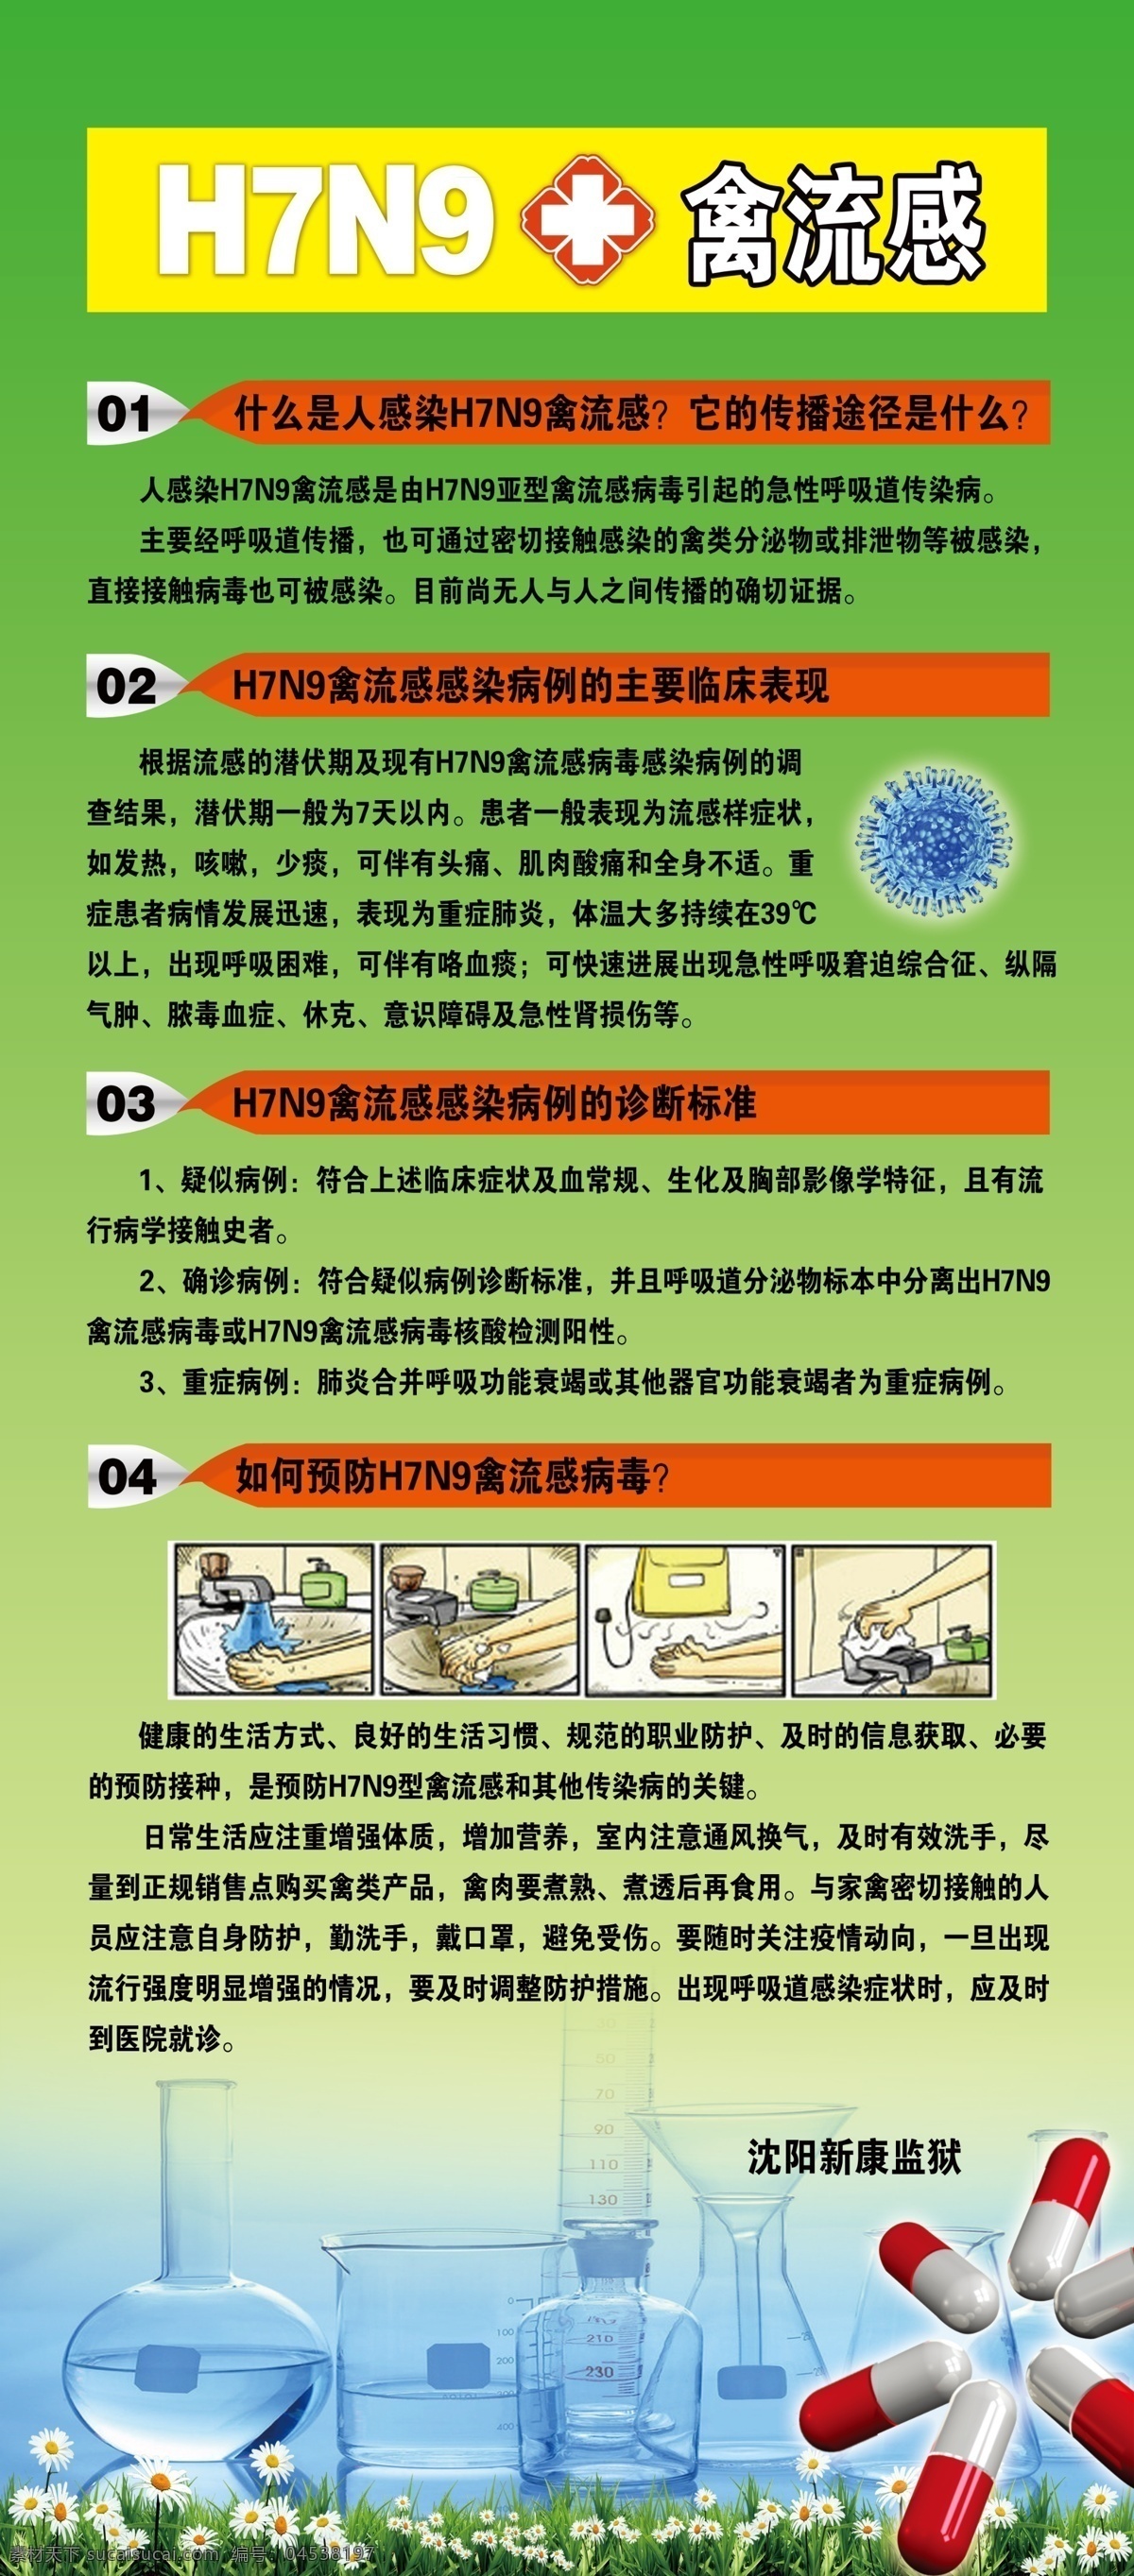 h7n9 禽流感 预防 传染病 展板模板 广告设计模板 源文件